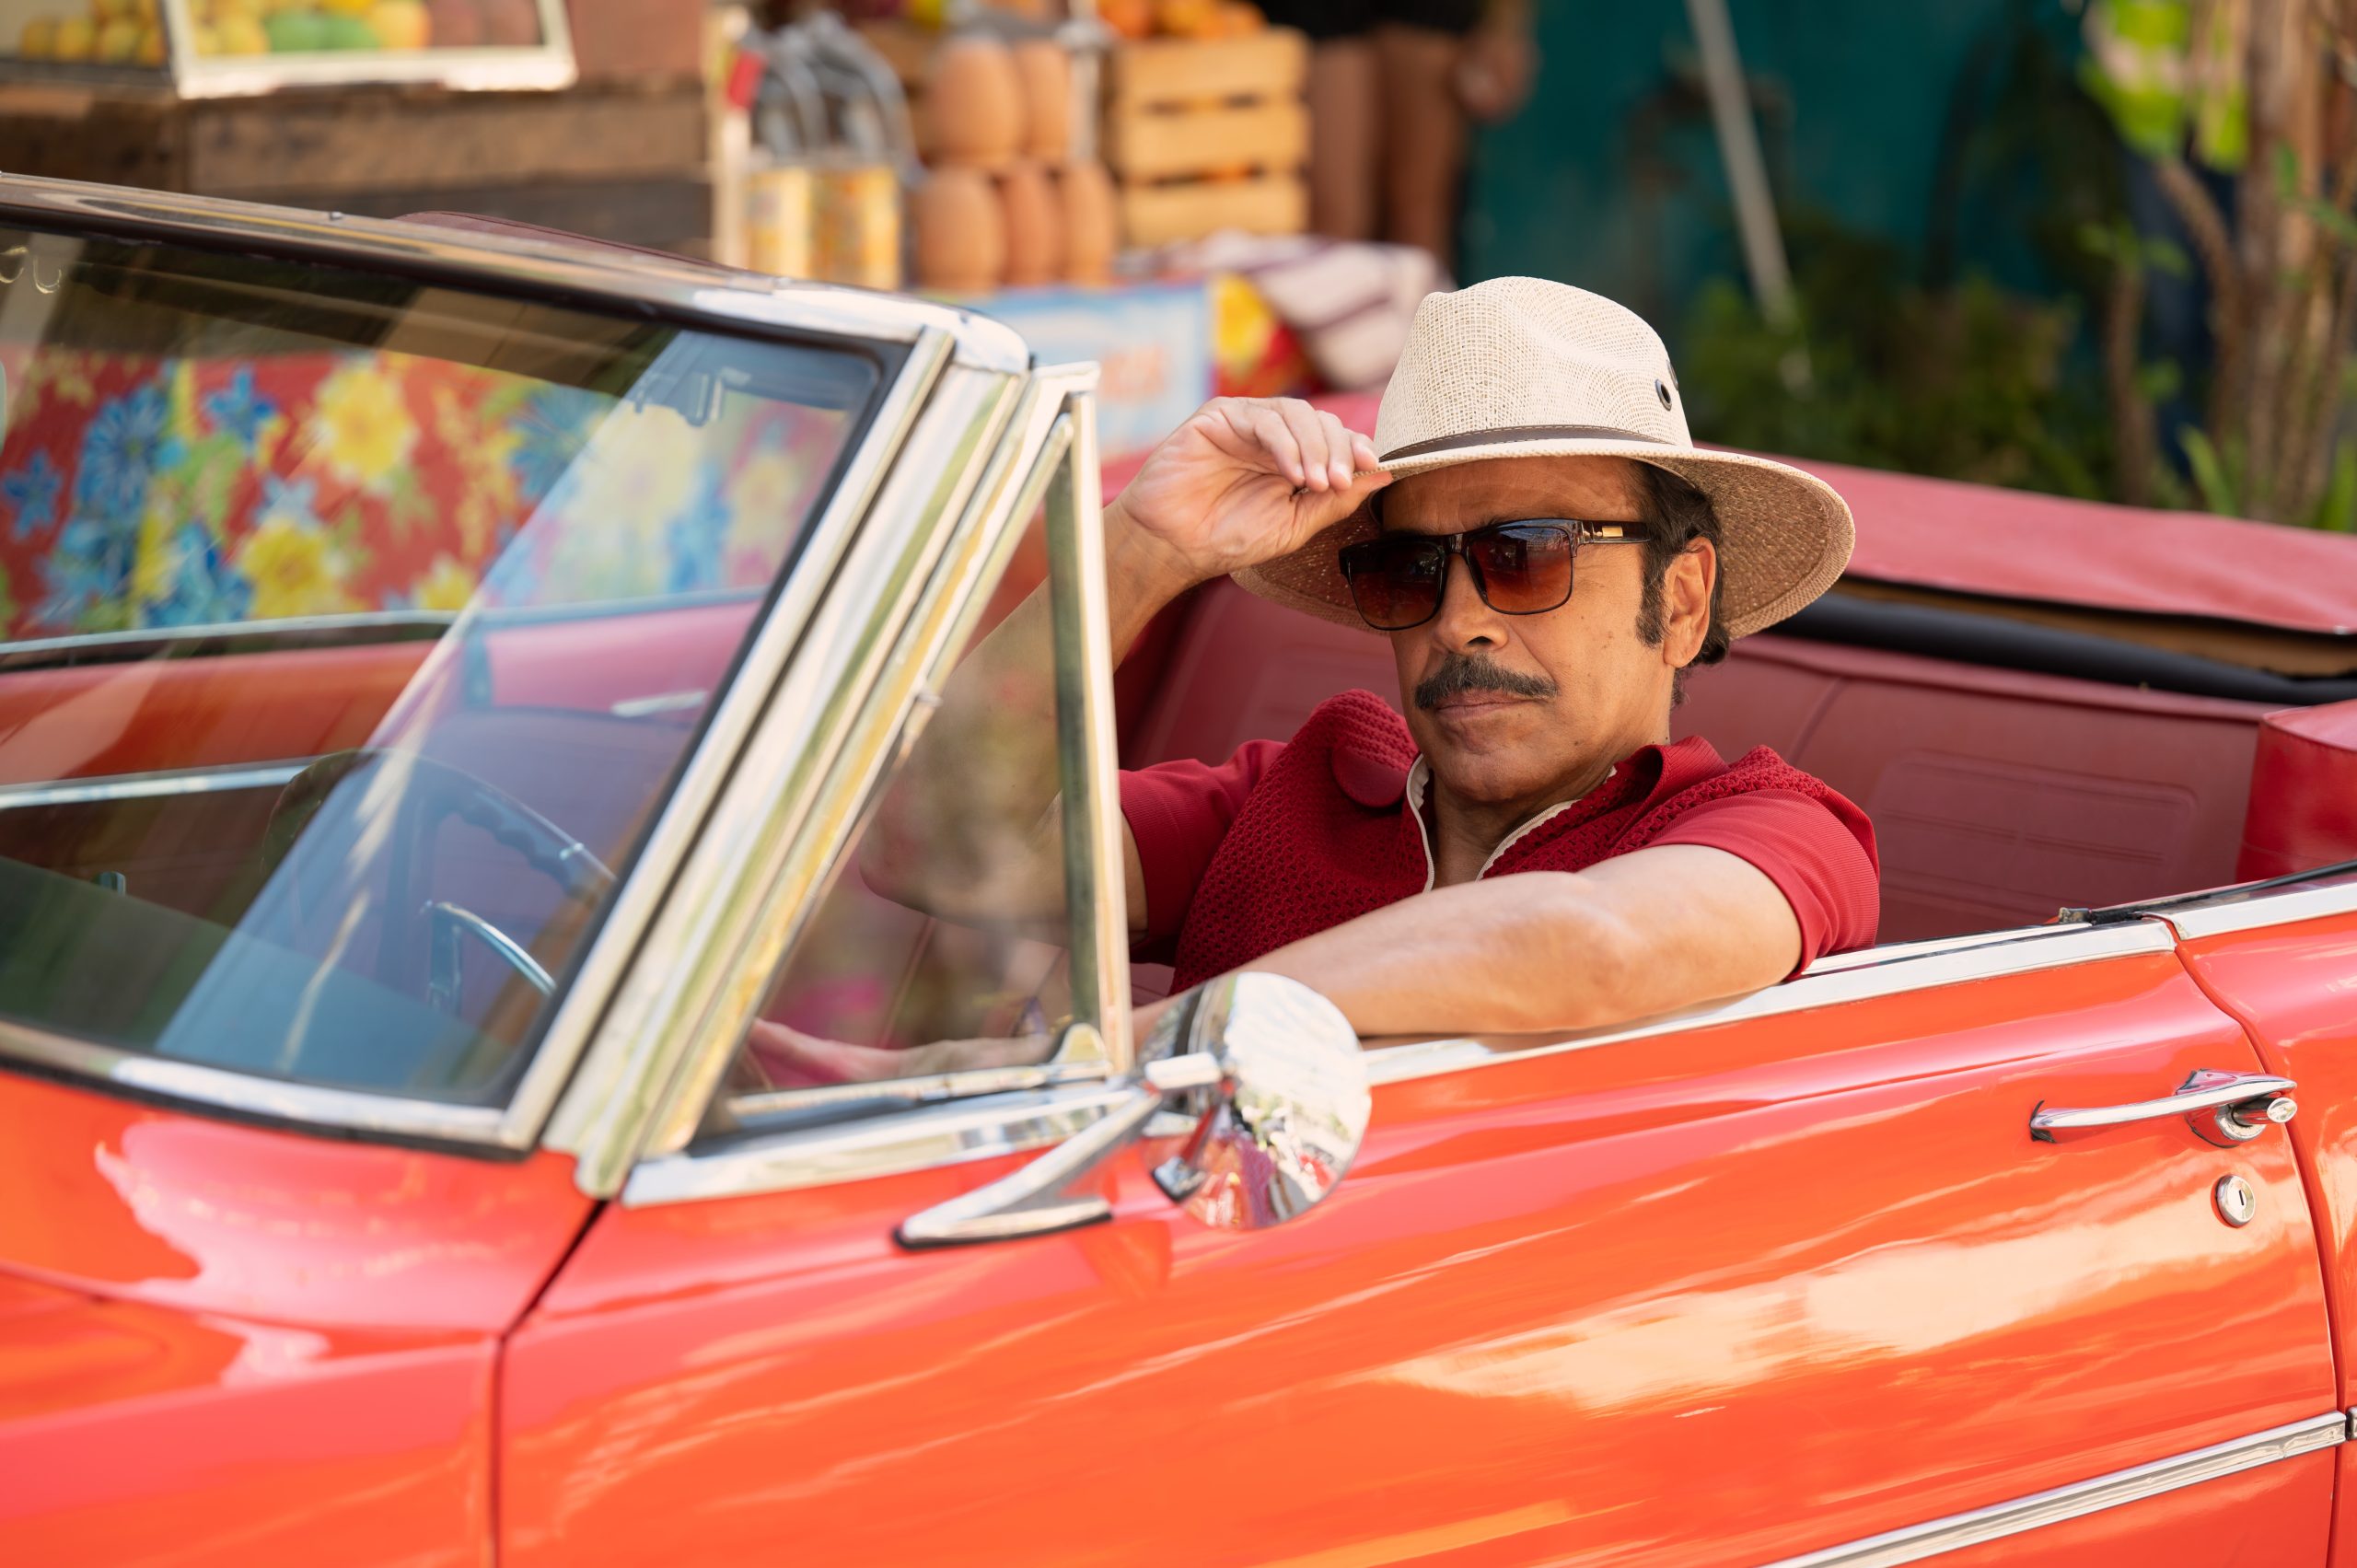 Apple TV+ revela la fecha de estreno y primeras imágenes de 'Acapulco' con Eugenio Derbez